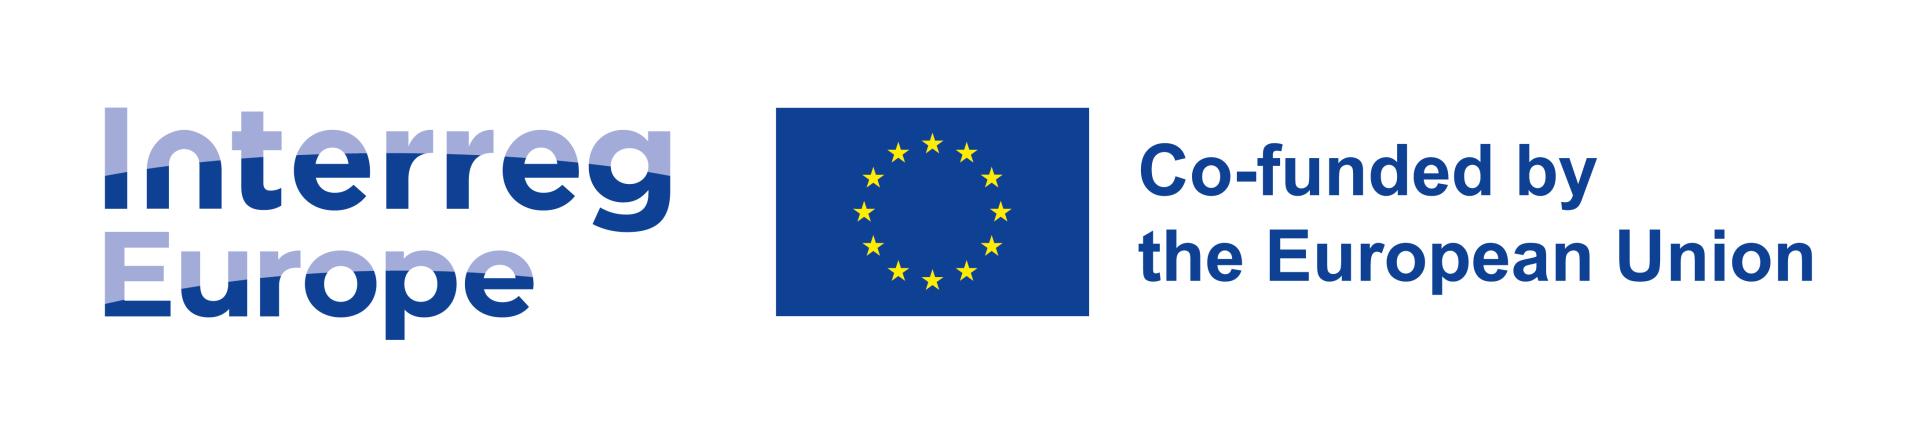 Krajowy Dzień Informacyjny - pierwszy nabór wniosków w programie Interreg Europa 2021-2027, 15 marca br - zobacz więcej